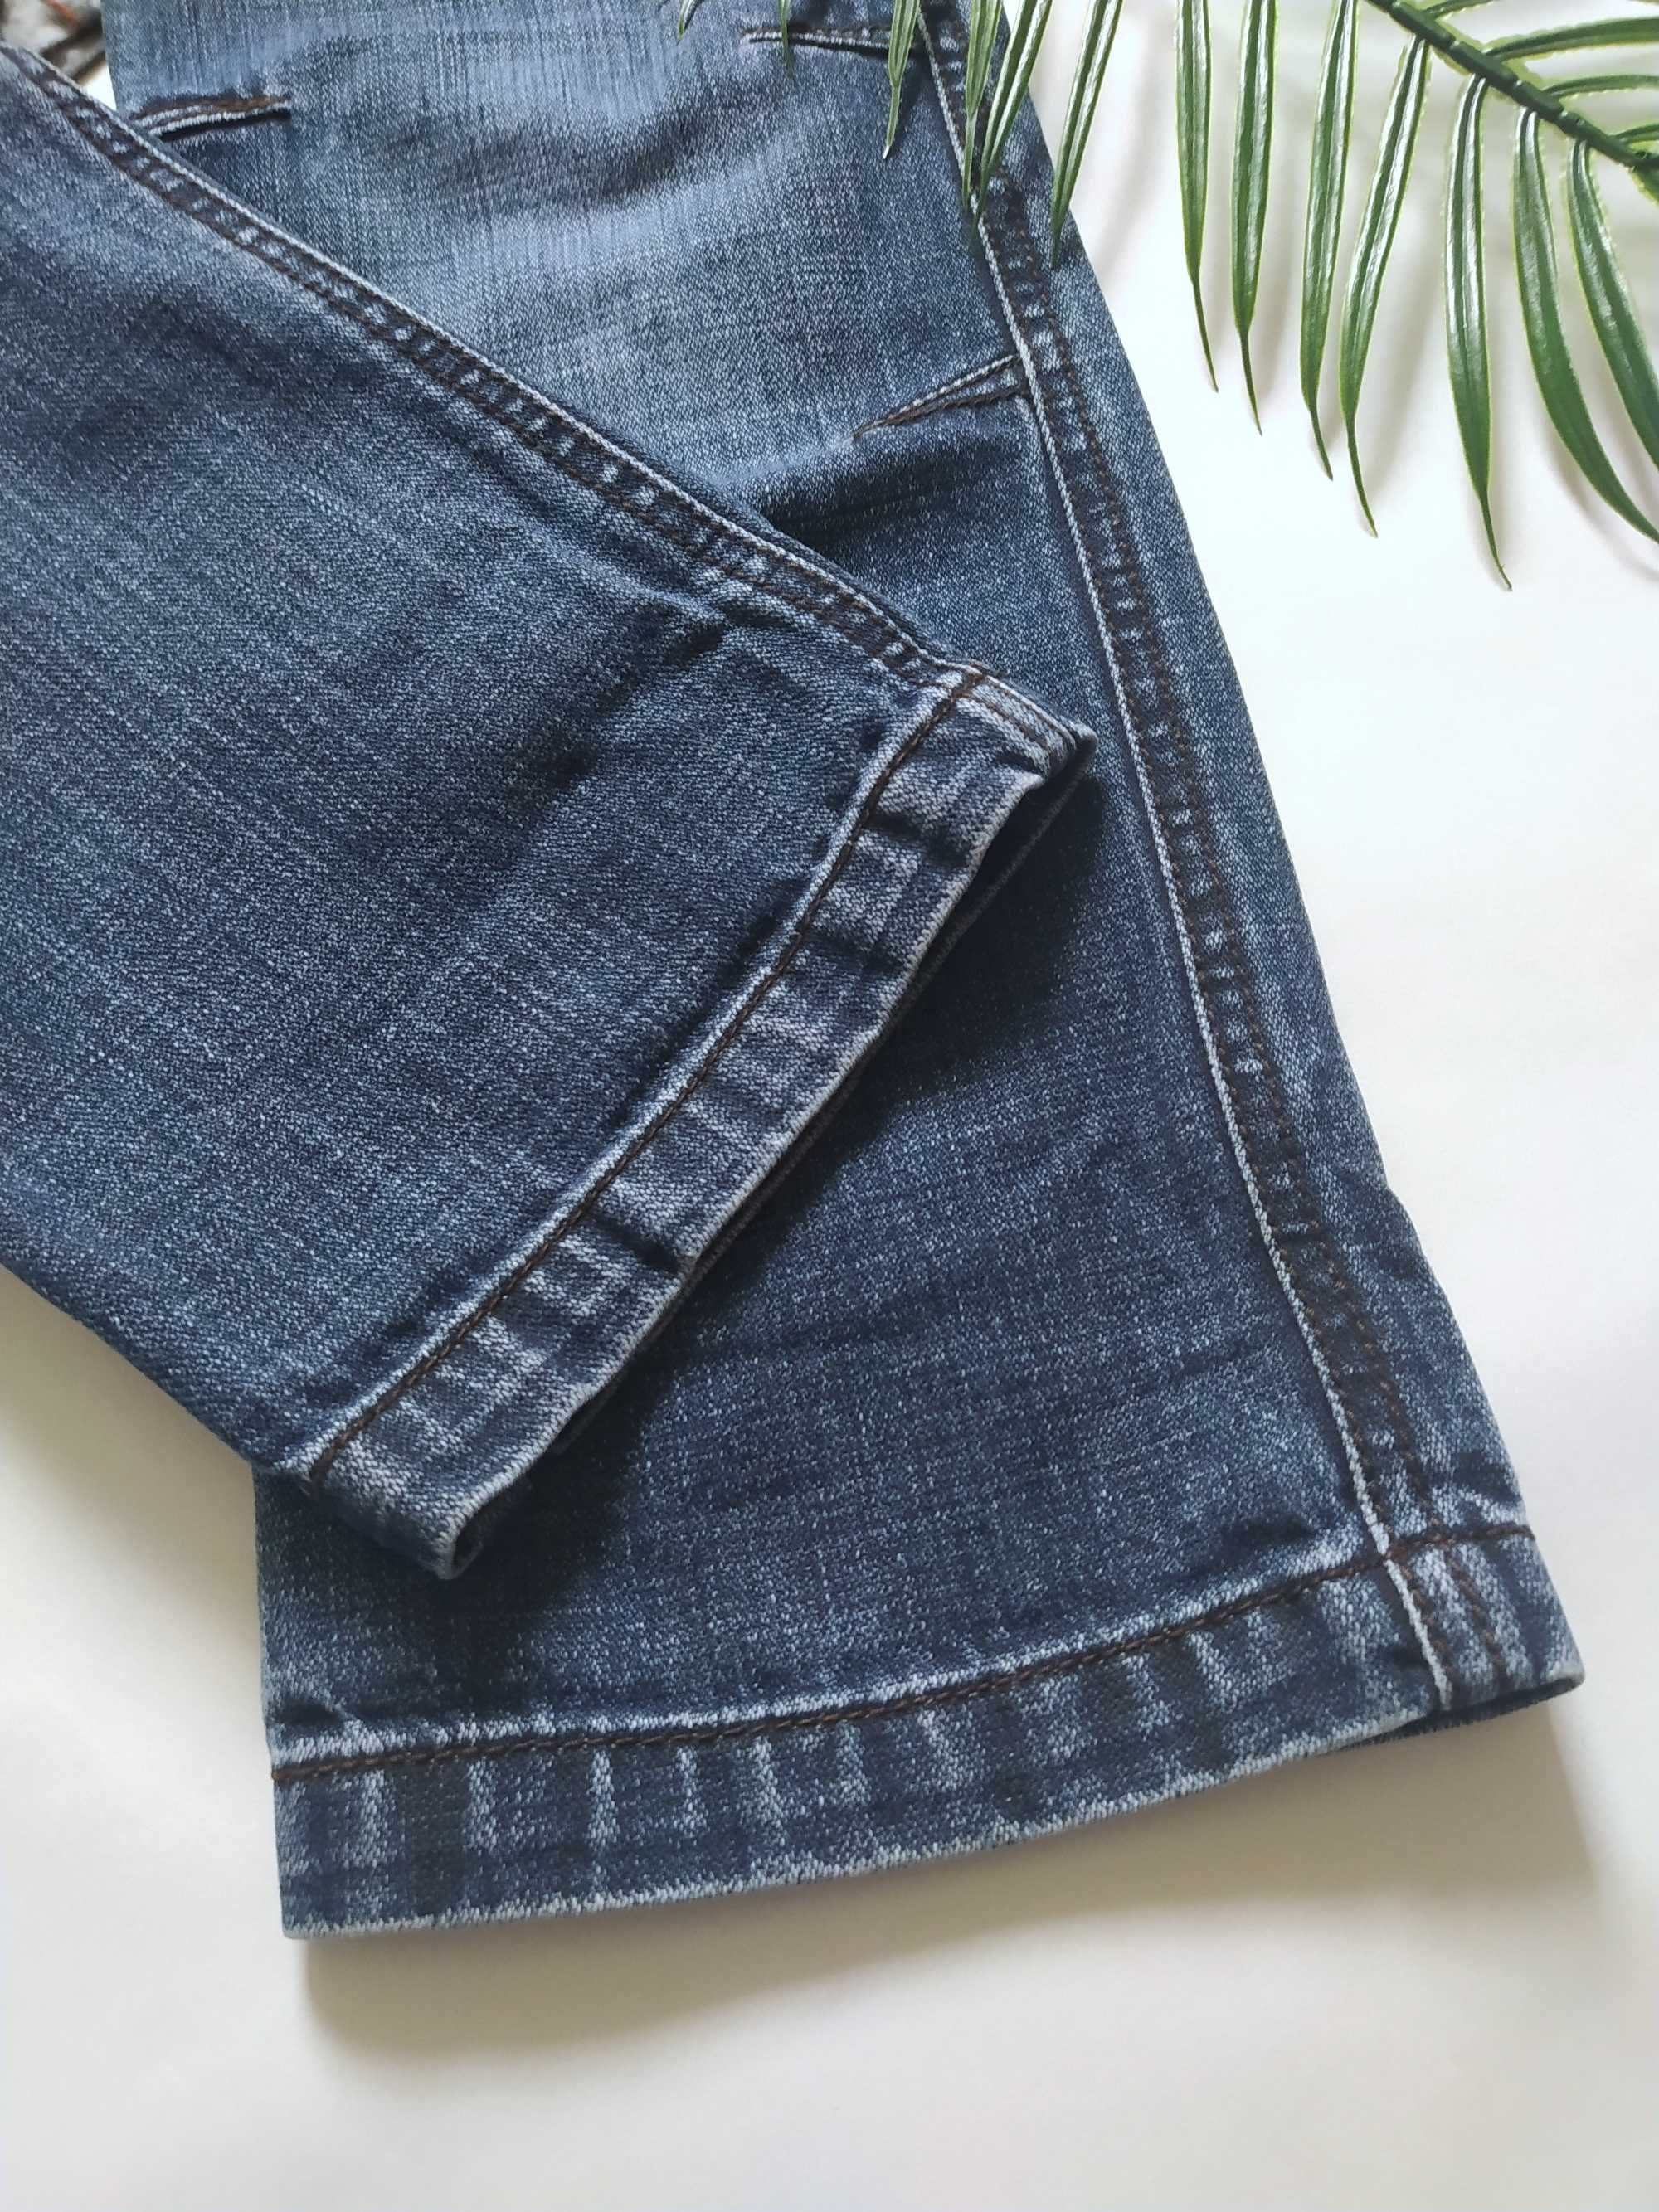 Фірмові джинси Esprit на 122-128 см, прямі труби, штани, джинсы